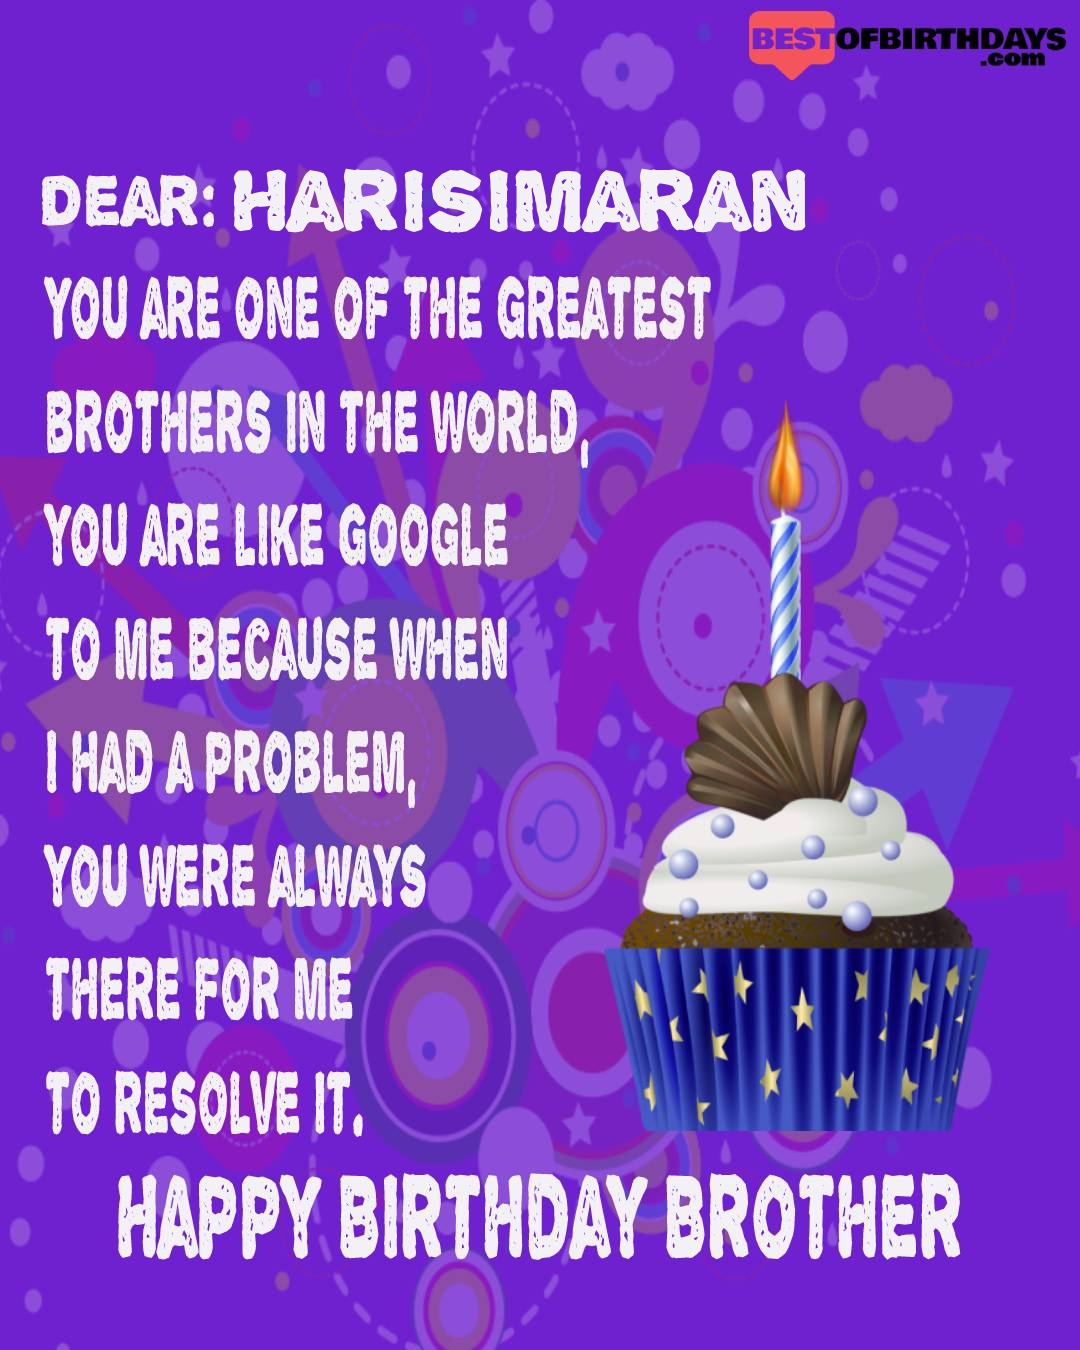 Happy birthday harisimaran bhai brother bro